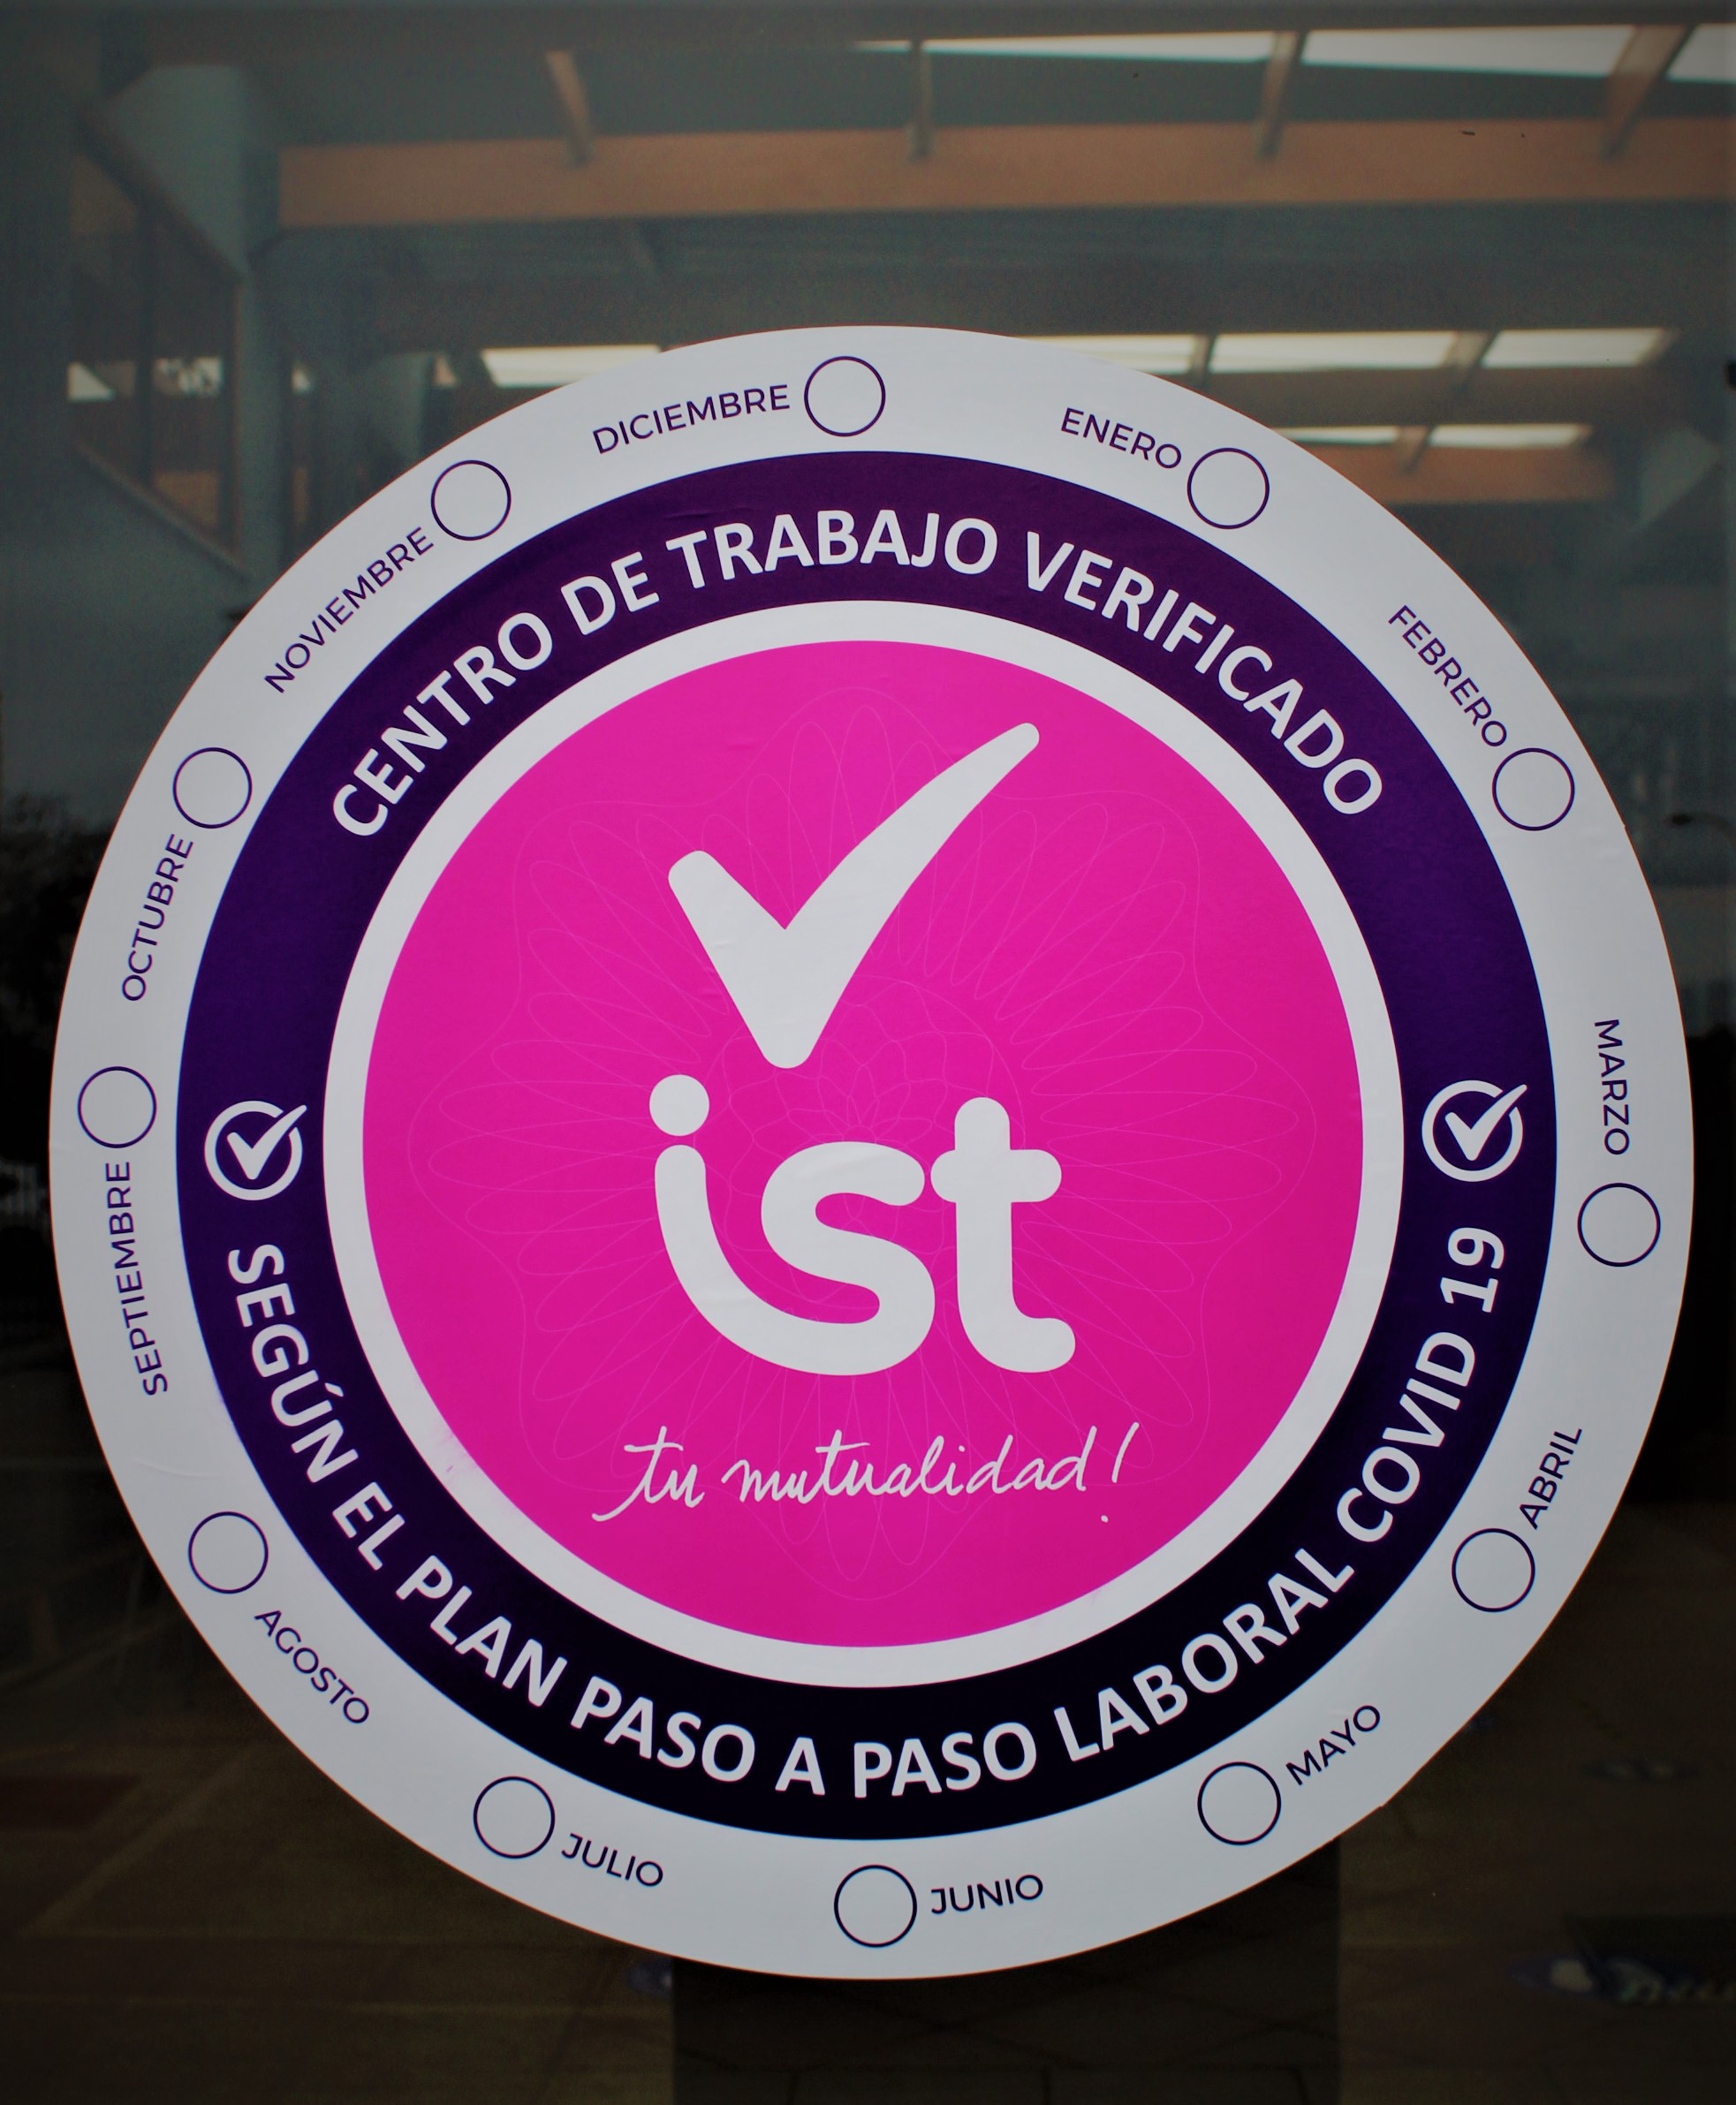 La Corporation Éducative Française de Valparaíso obtient la certification et le label COVID-19 IST / Certificación y entrega de sello COVID-19 IST a Corporación Educacional Francesa de Valparaíso